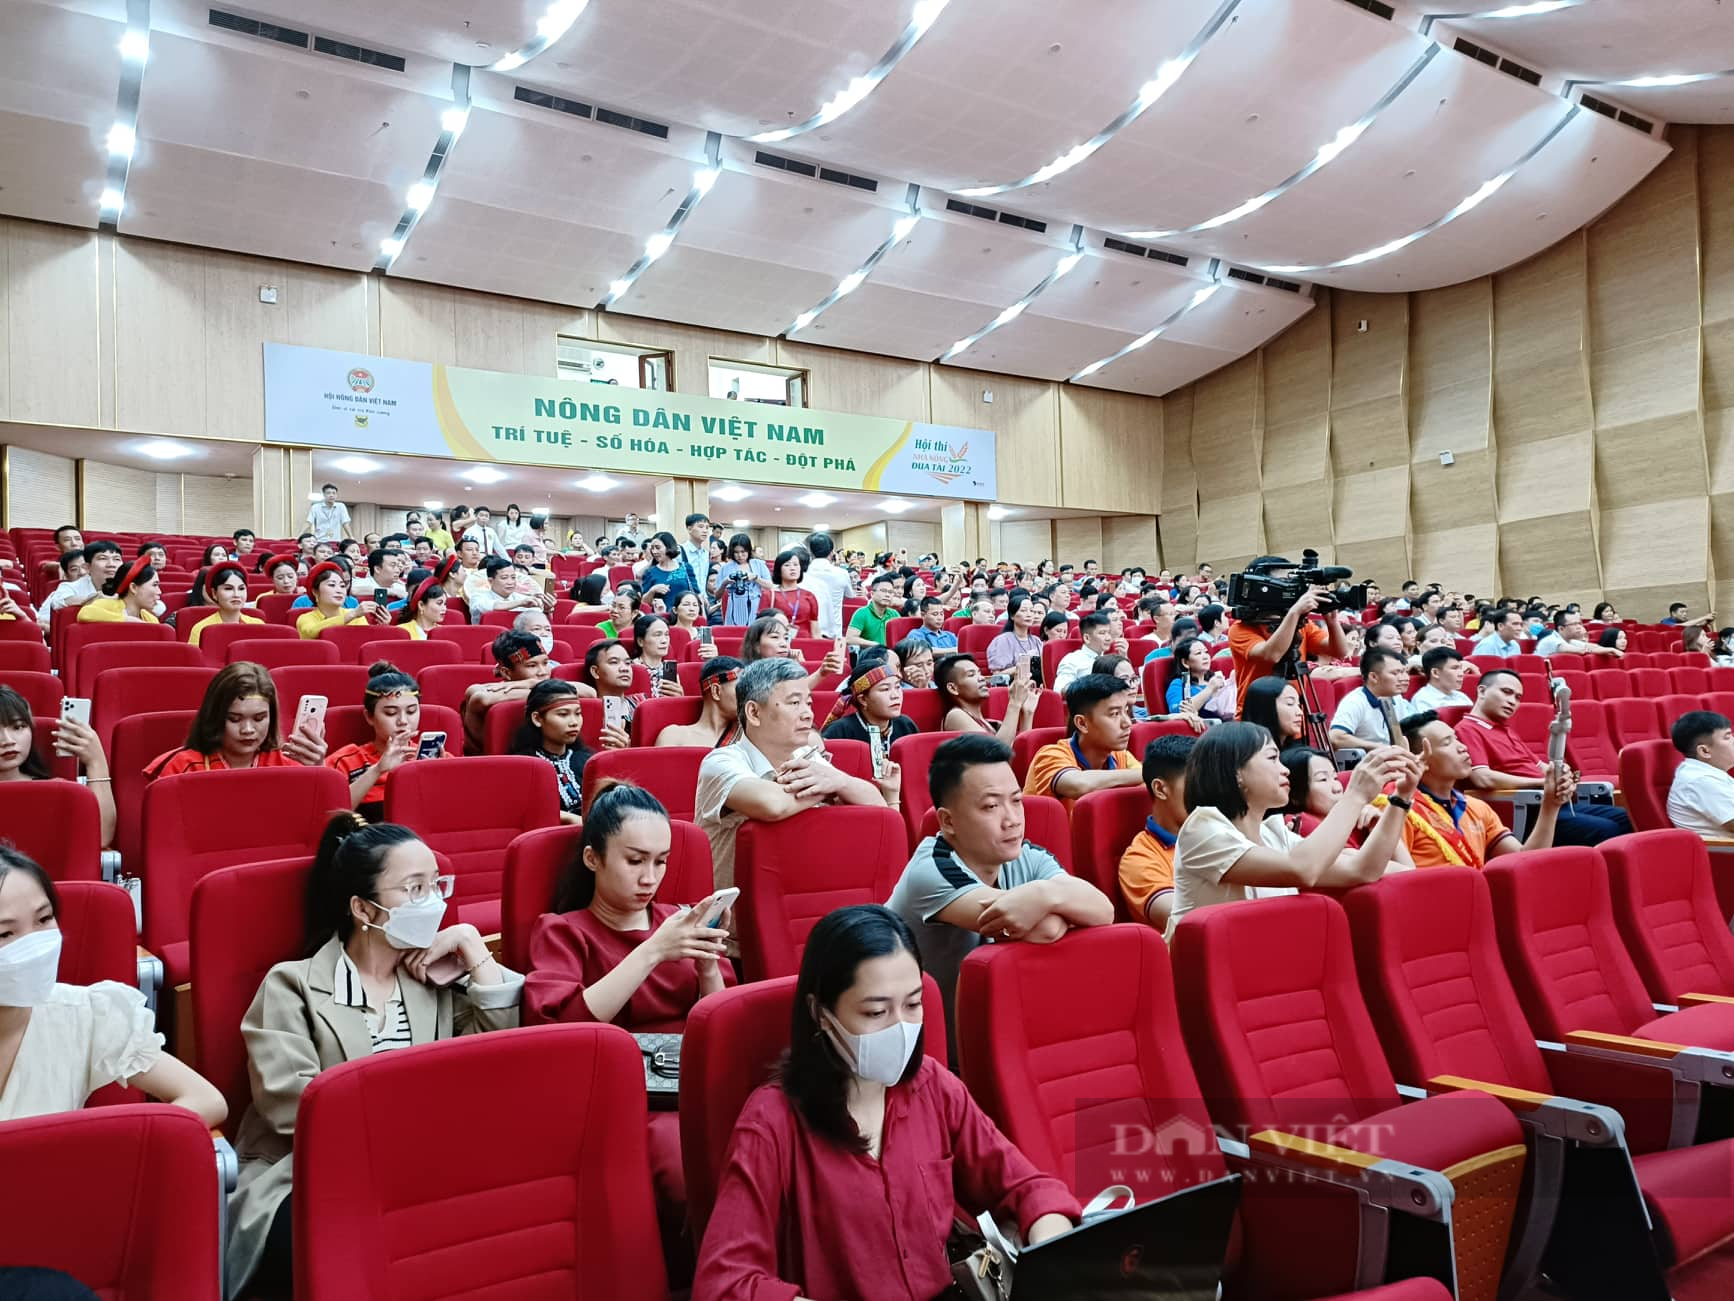 Khán giả đến chật kín hội trường cổ vũ Hội thi Nhà nông đua tài toàn quốc khu vực II tại TP Hải Phòng - Ảnh 2.